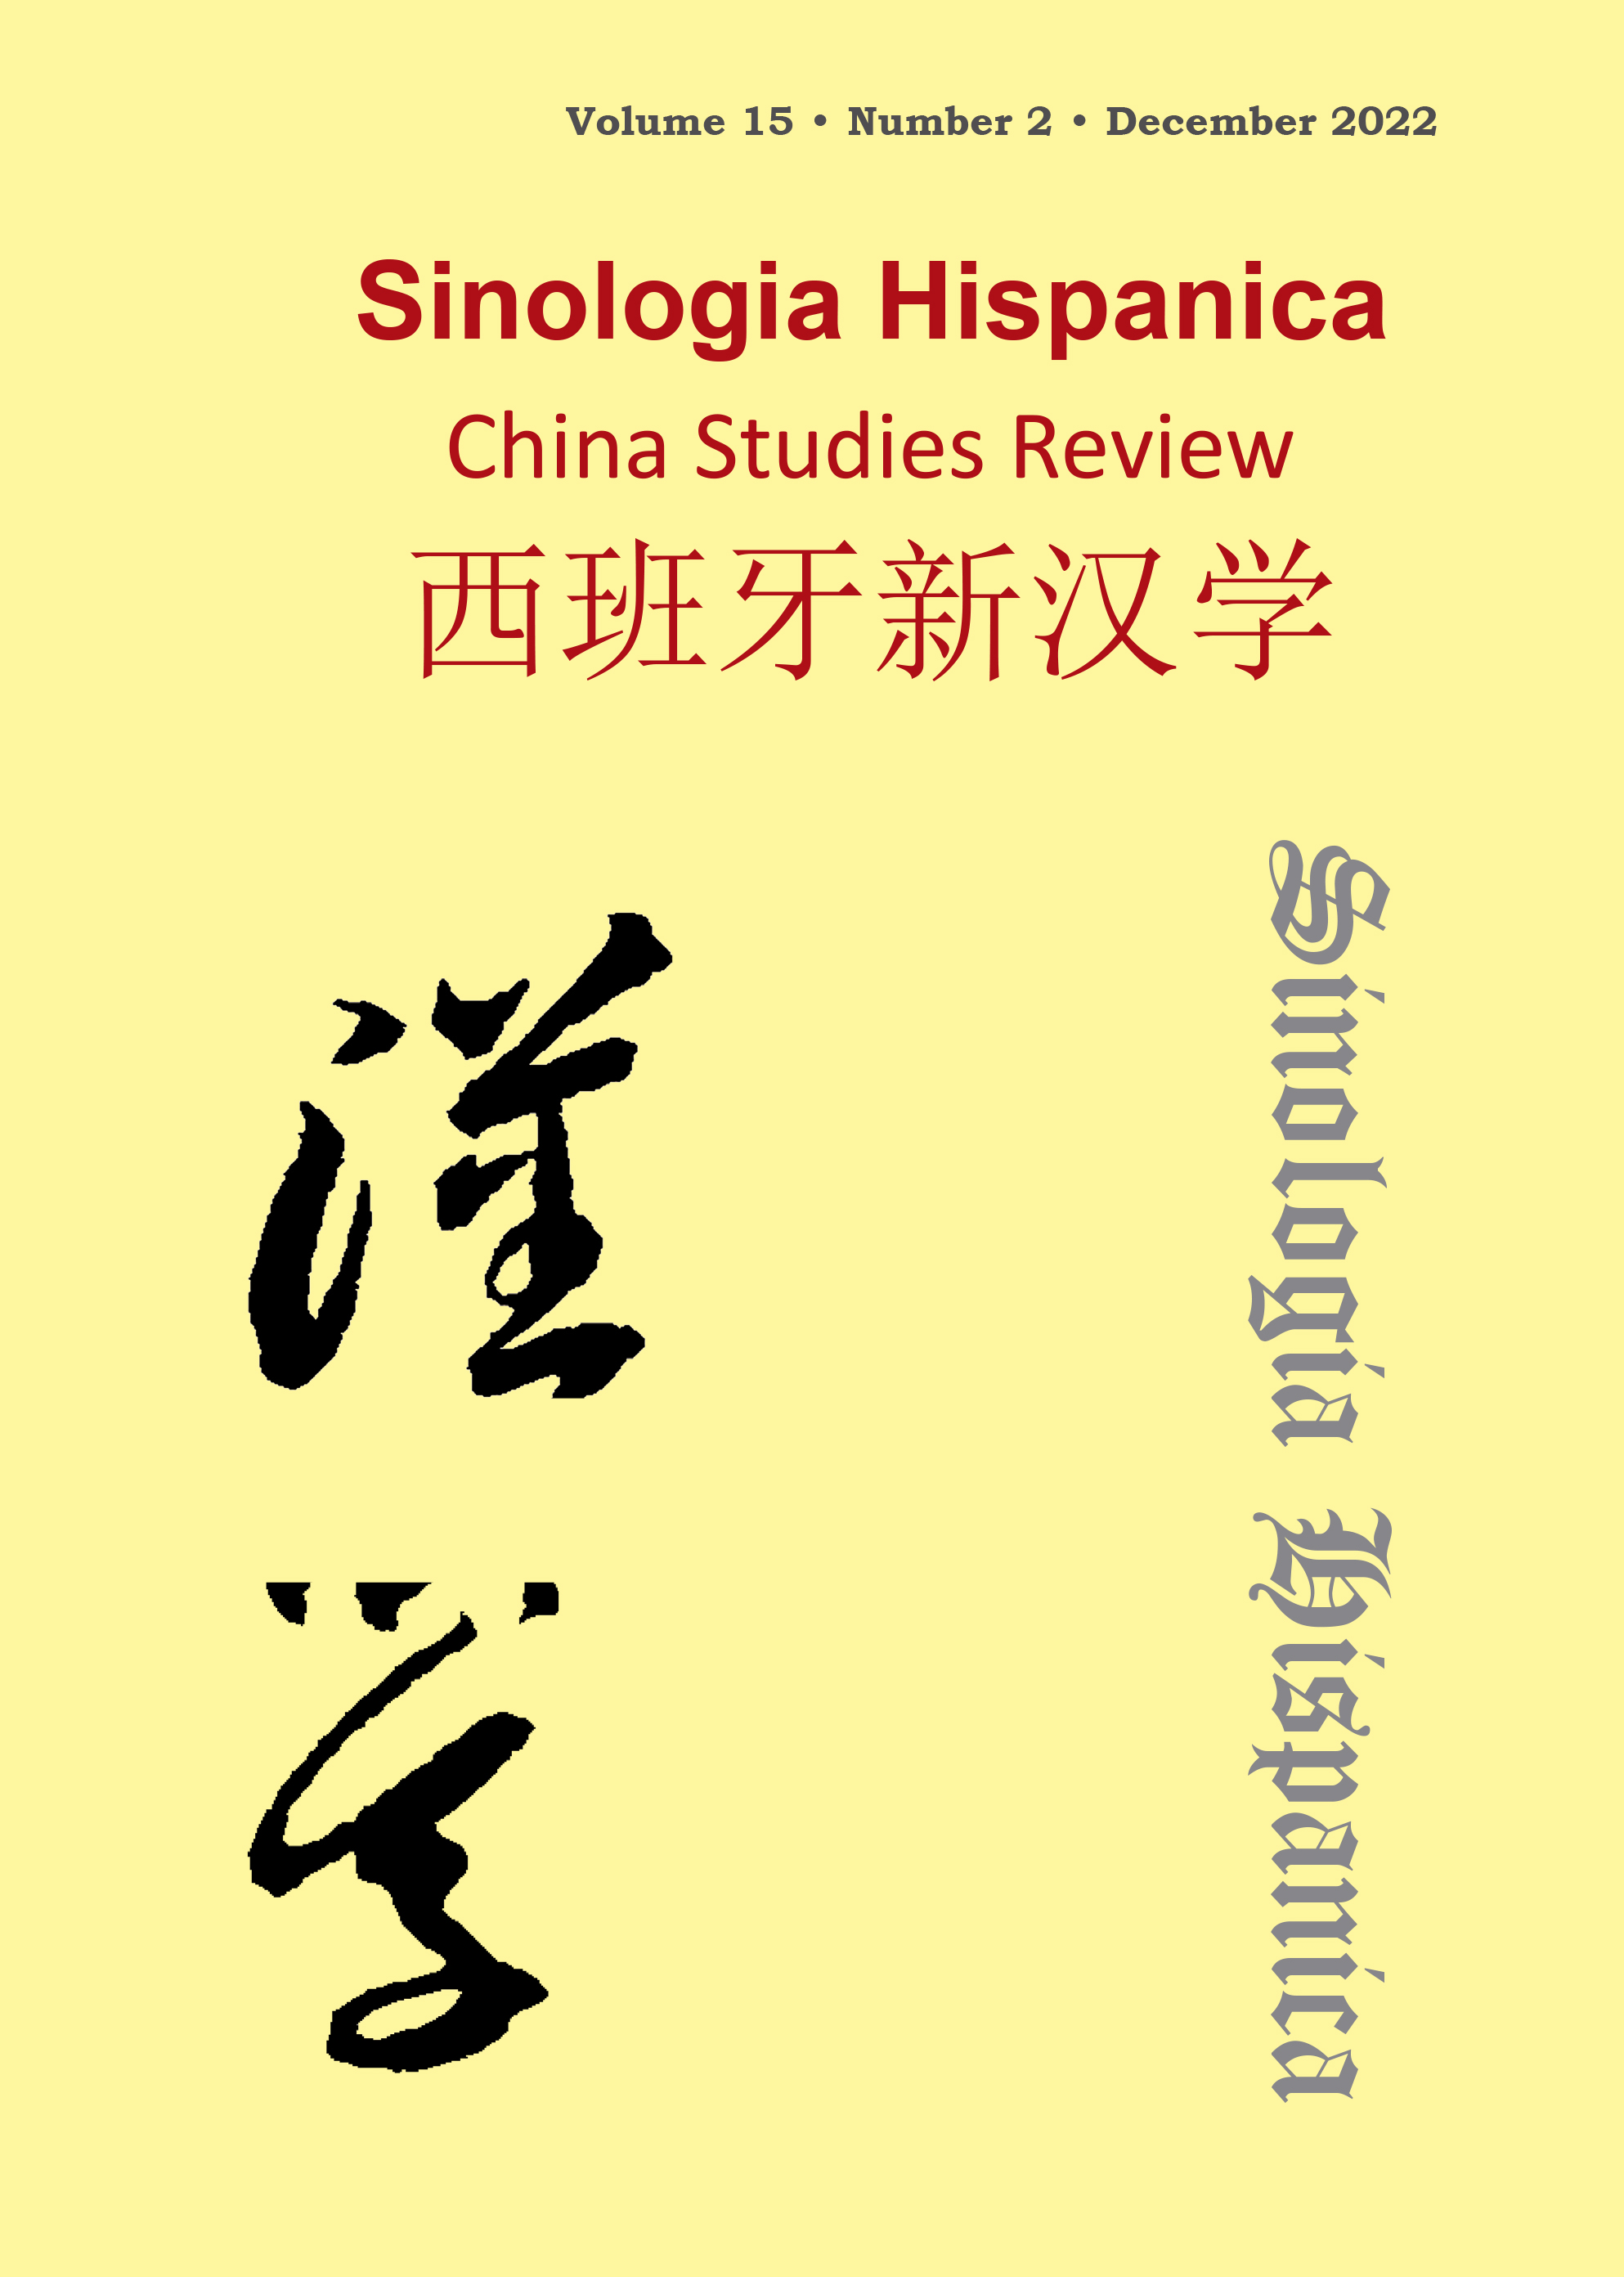 Discusión histórica y reflexión sobre la latinización de los caracteres chinos